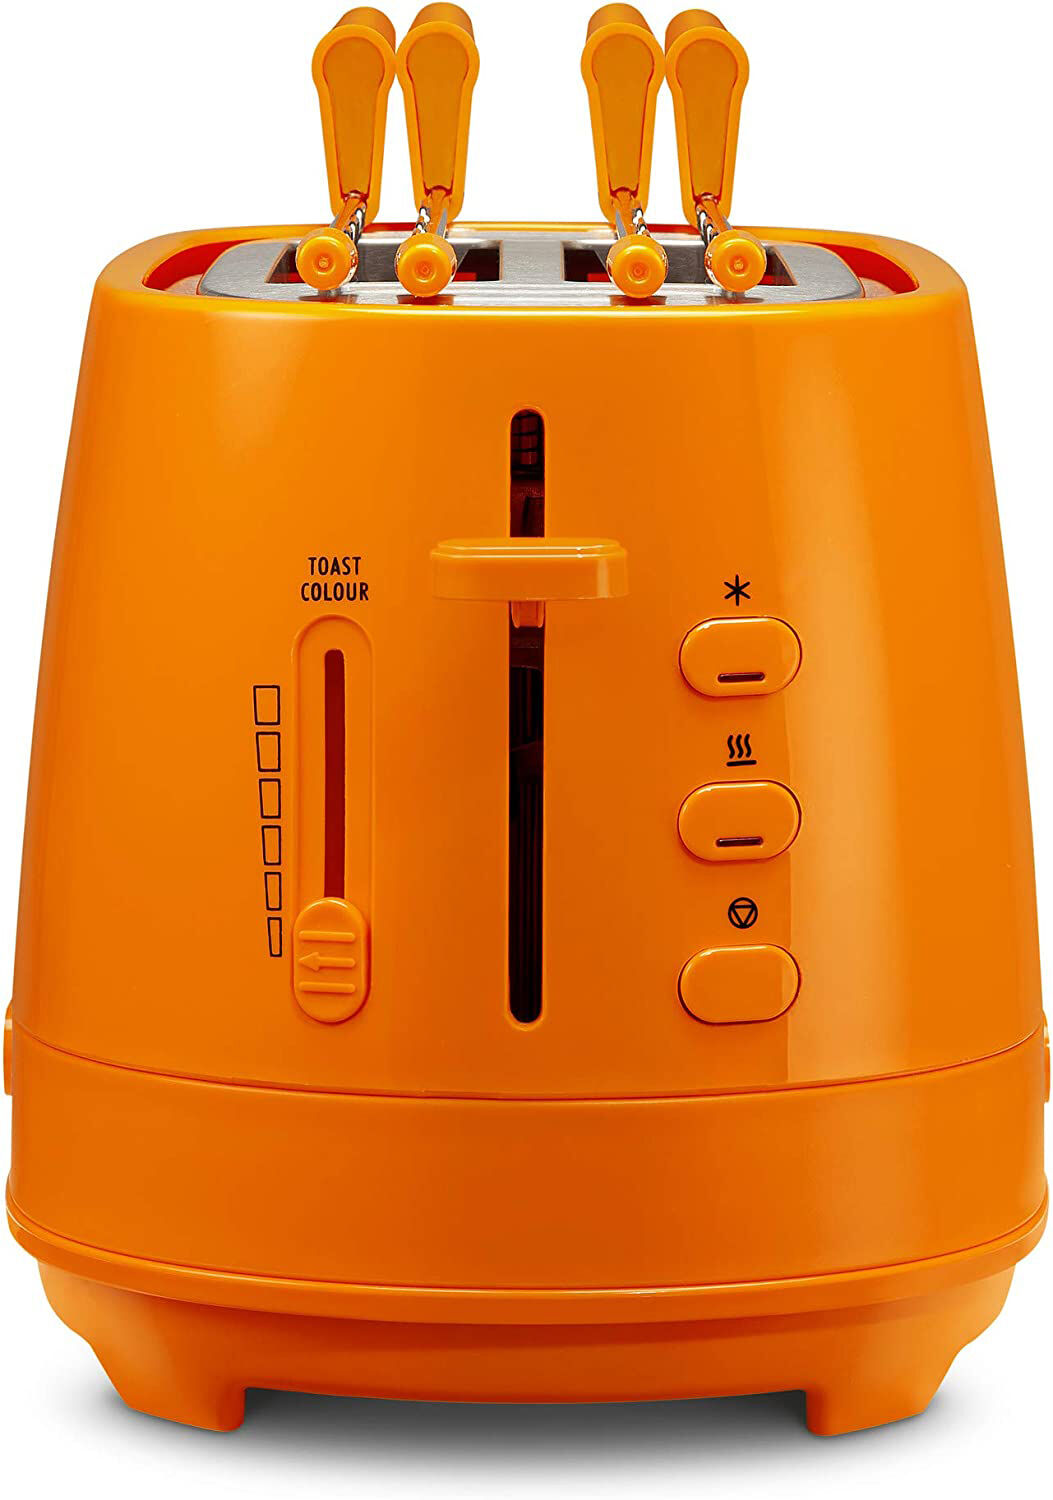 delonghi ctlap2203o tostapane con pinze 2 fette potenza 550 watt tostatura regolabile termostato cassetto fondo raccoglibriciole colore arancione - ctlap2203o